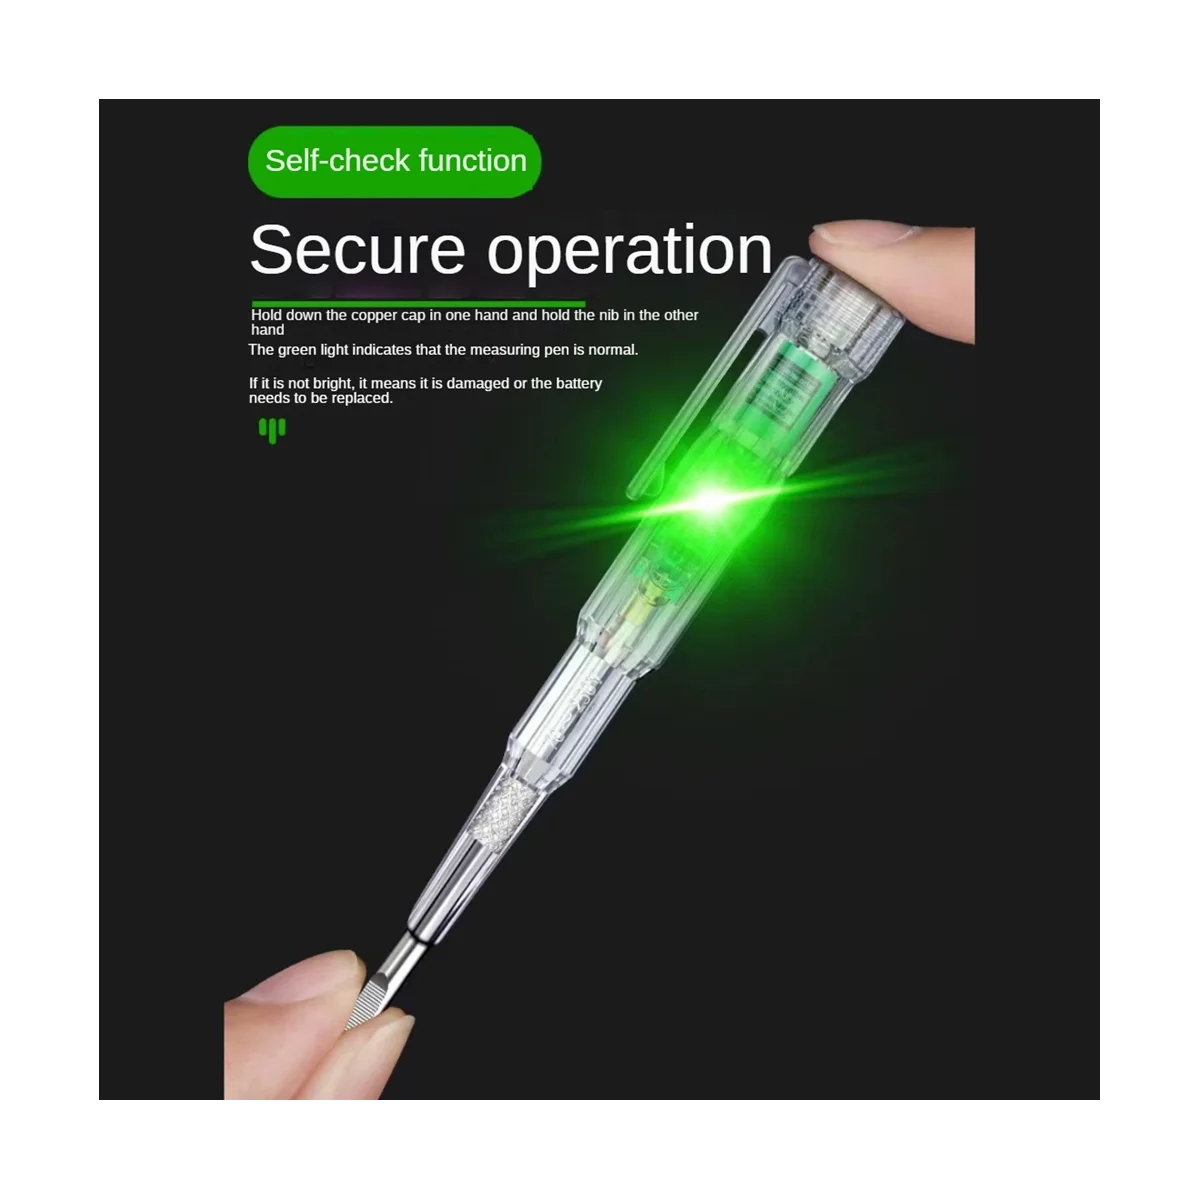  többfunkciós elektromos toll nagy fényerejű dupla lámpás elektromos toll mérő villanyszerelő indukciós ceruza - 4